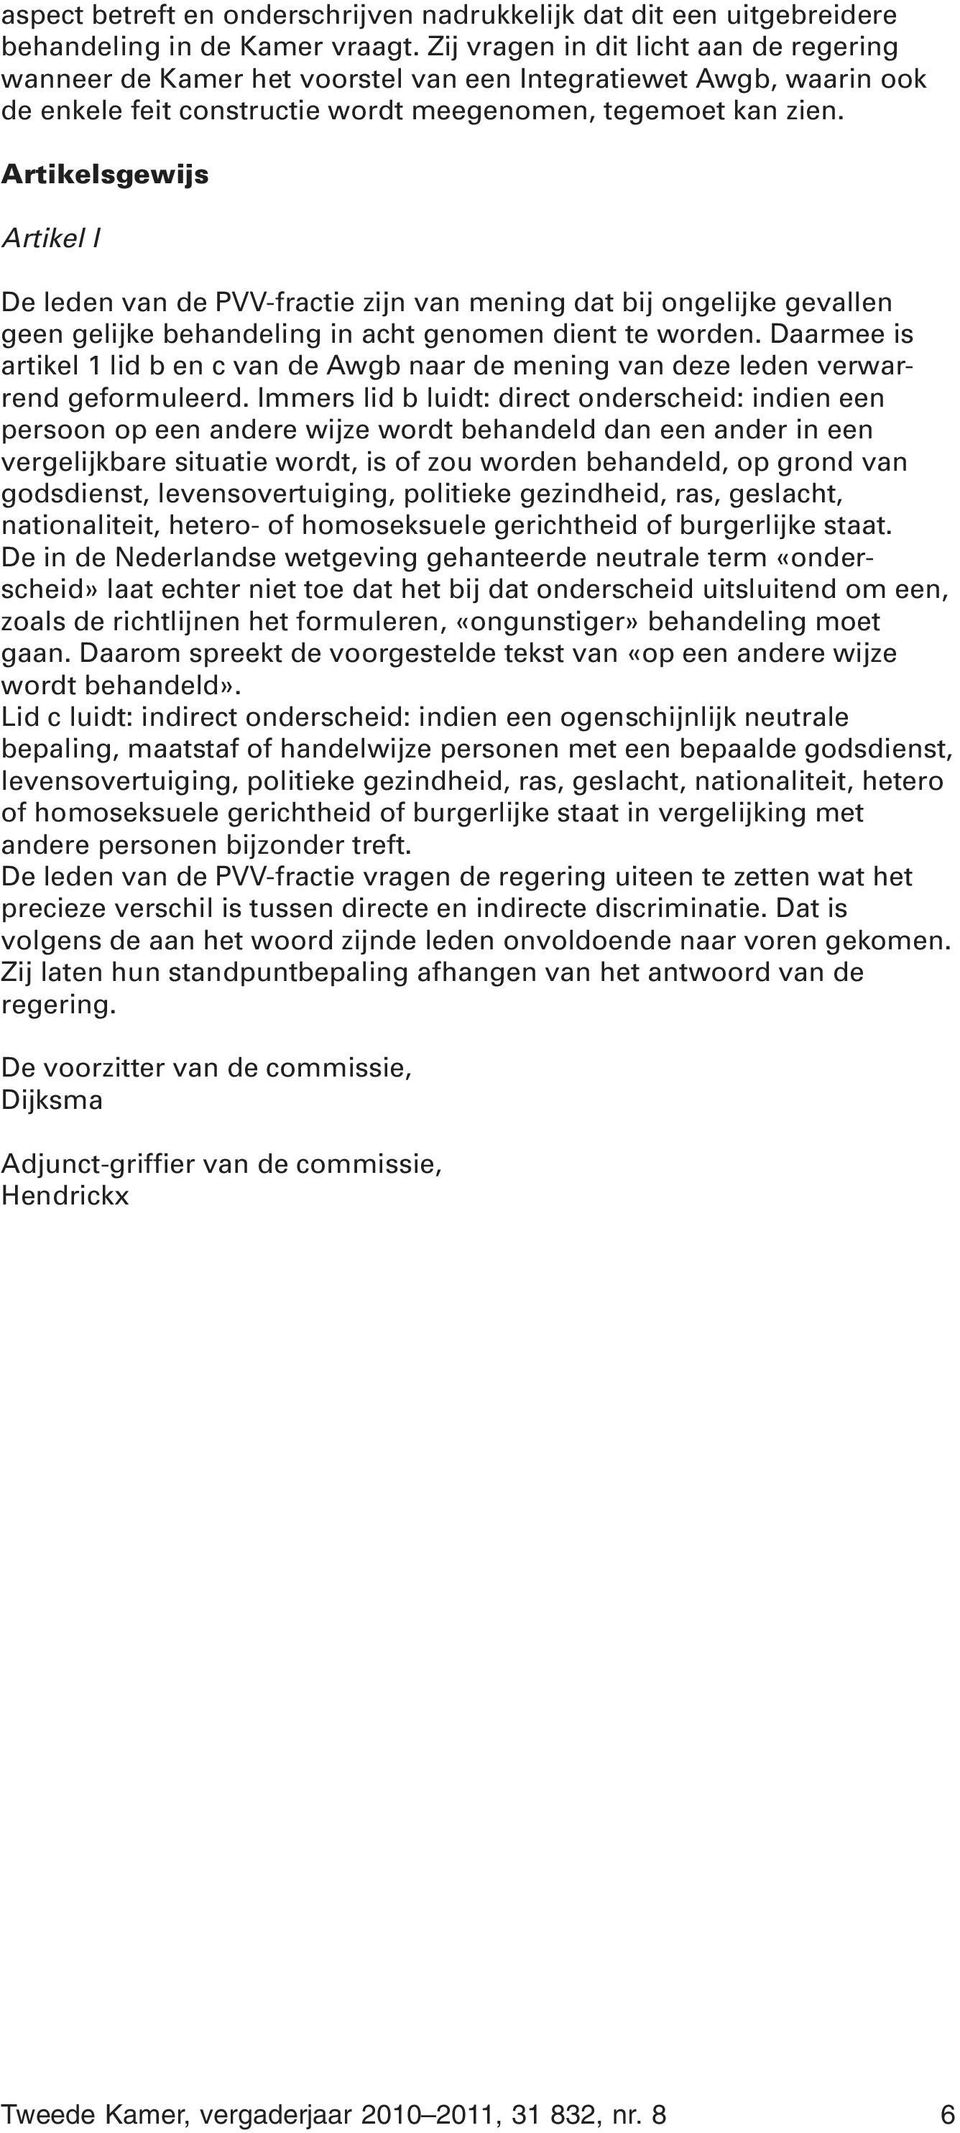 Artikelsgewijs Artikel I De leden van de PVV-fractie zijn van mening dat bij ongelijke gevallen geen gelijke behandeling in acht genomen dient te worden.